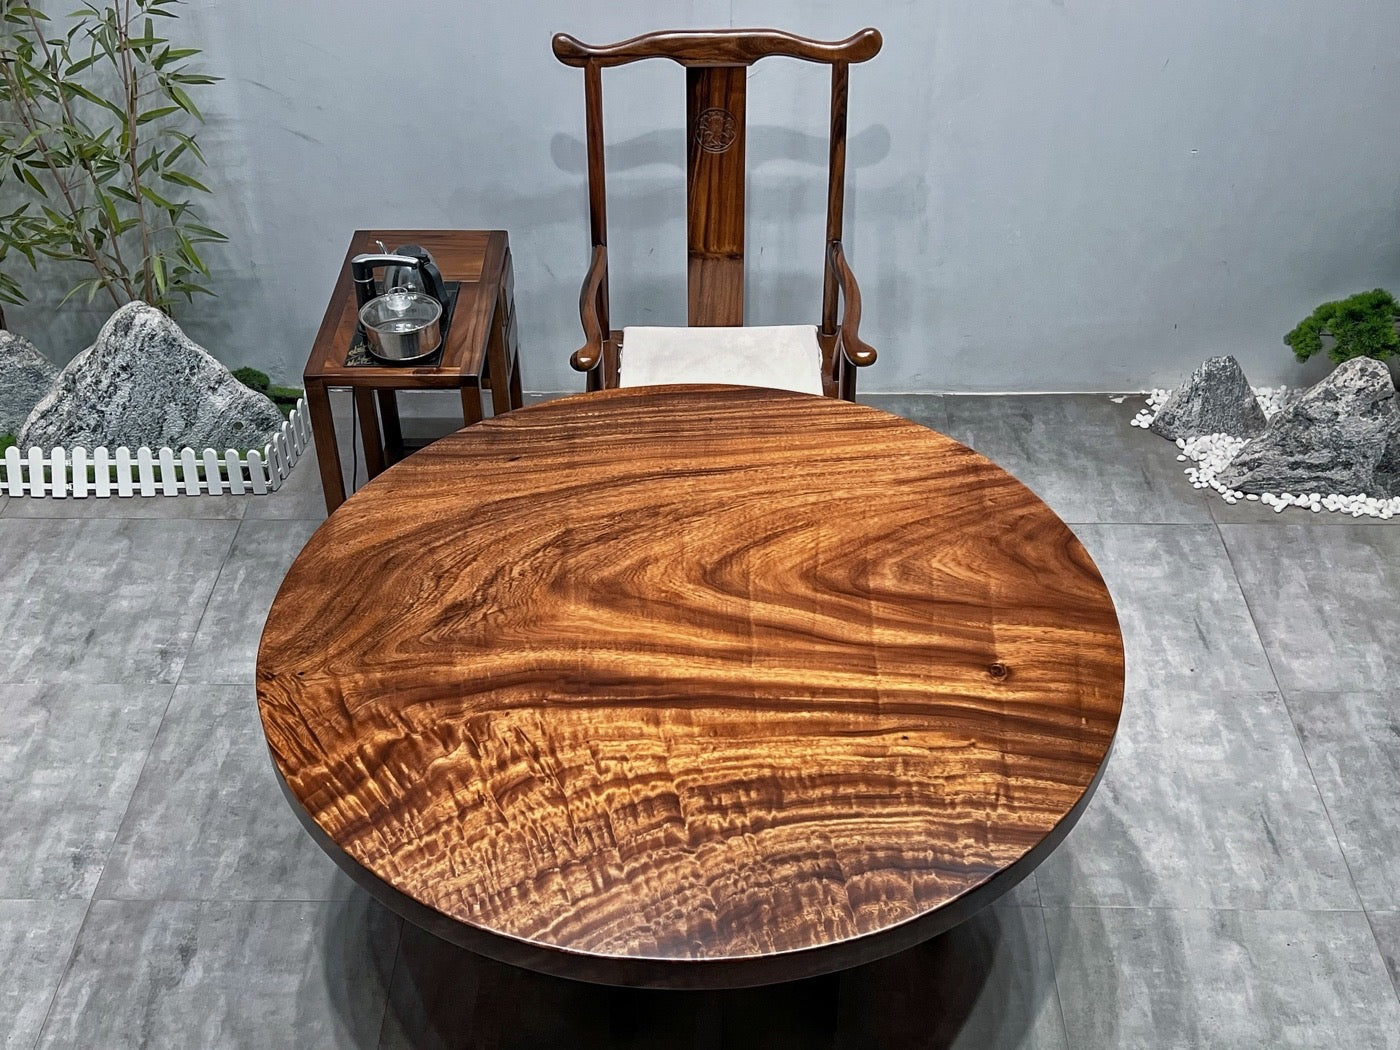 طاولة مستديرة من الخشب الداكن، طاولة مستديرة من الخشب العتيق، طاولة مستديرة من الخشب الصلب، طاولة مستديرة من خشب الكرز